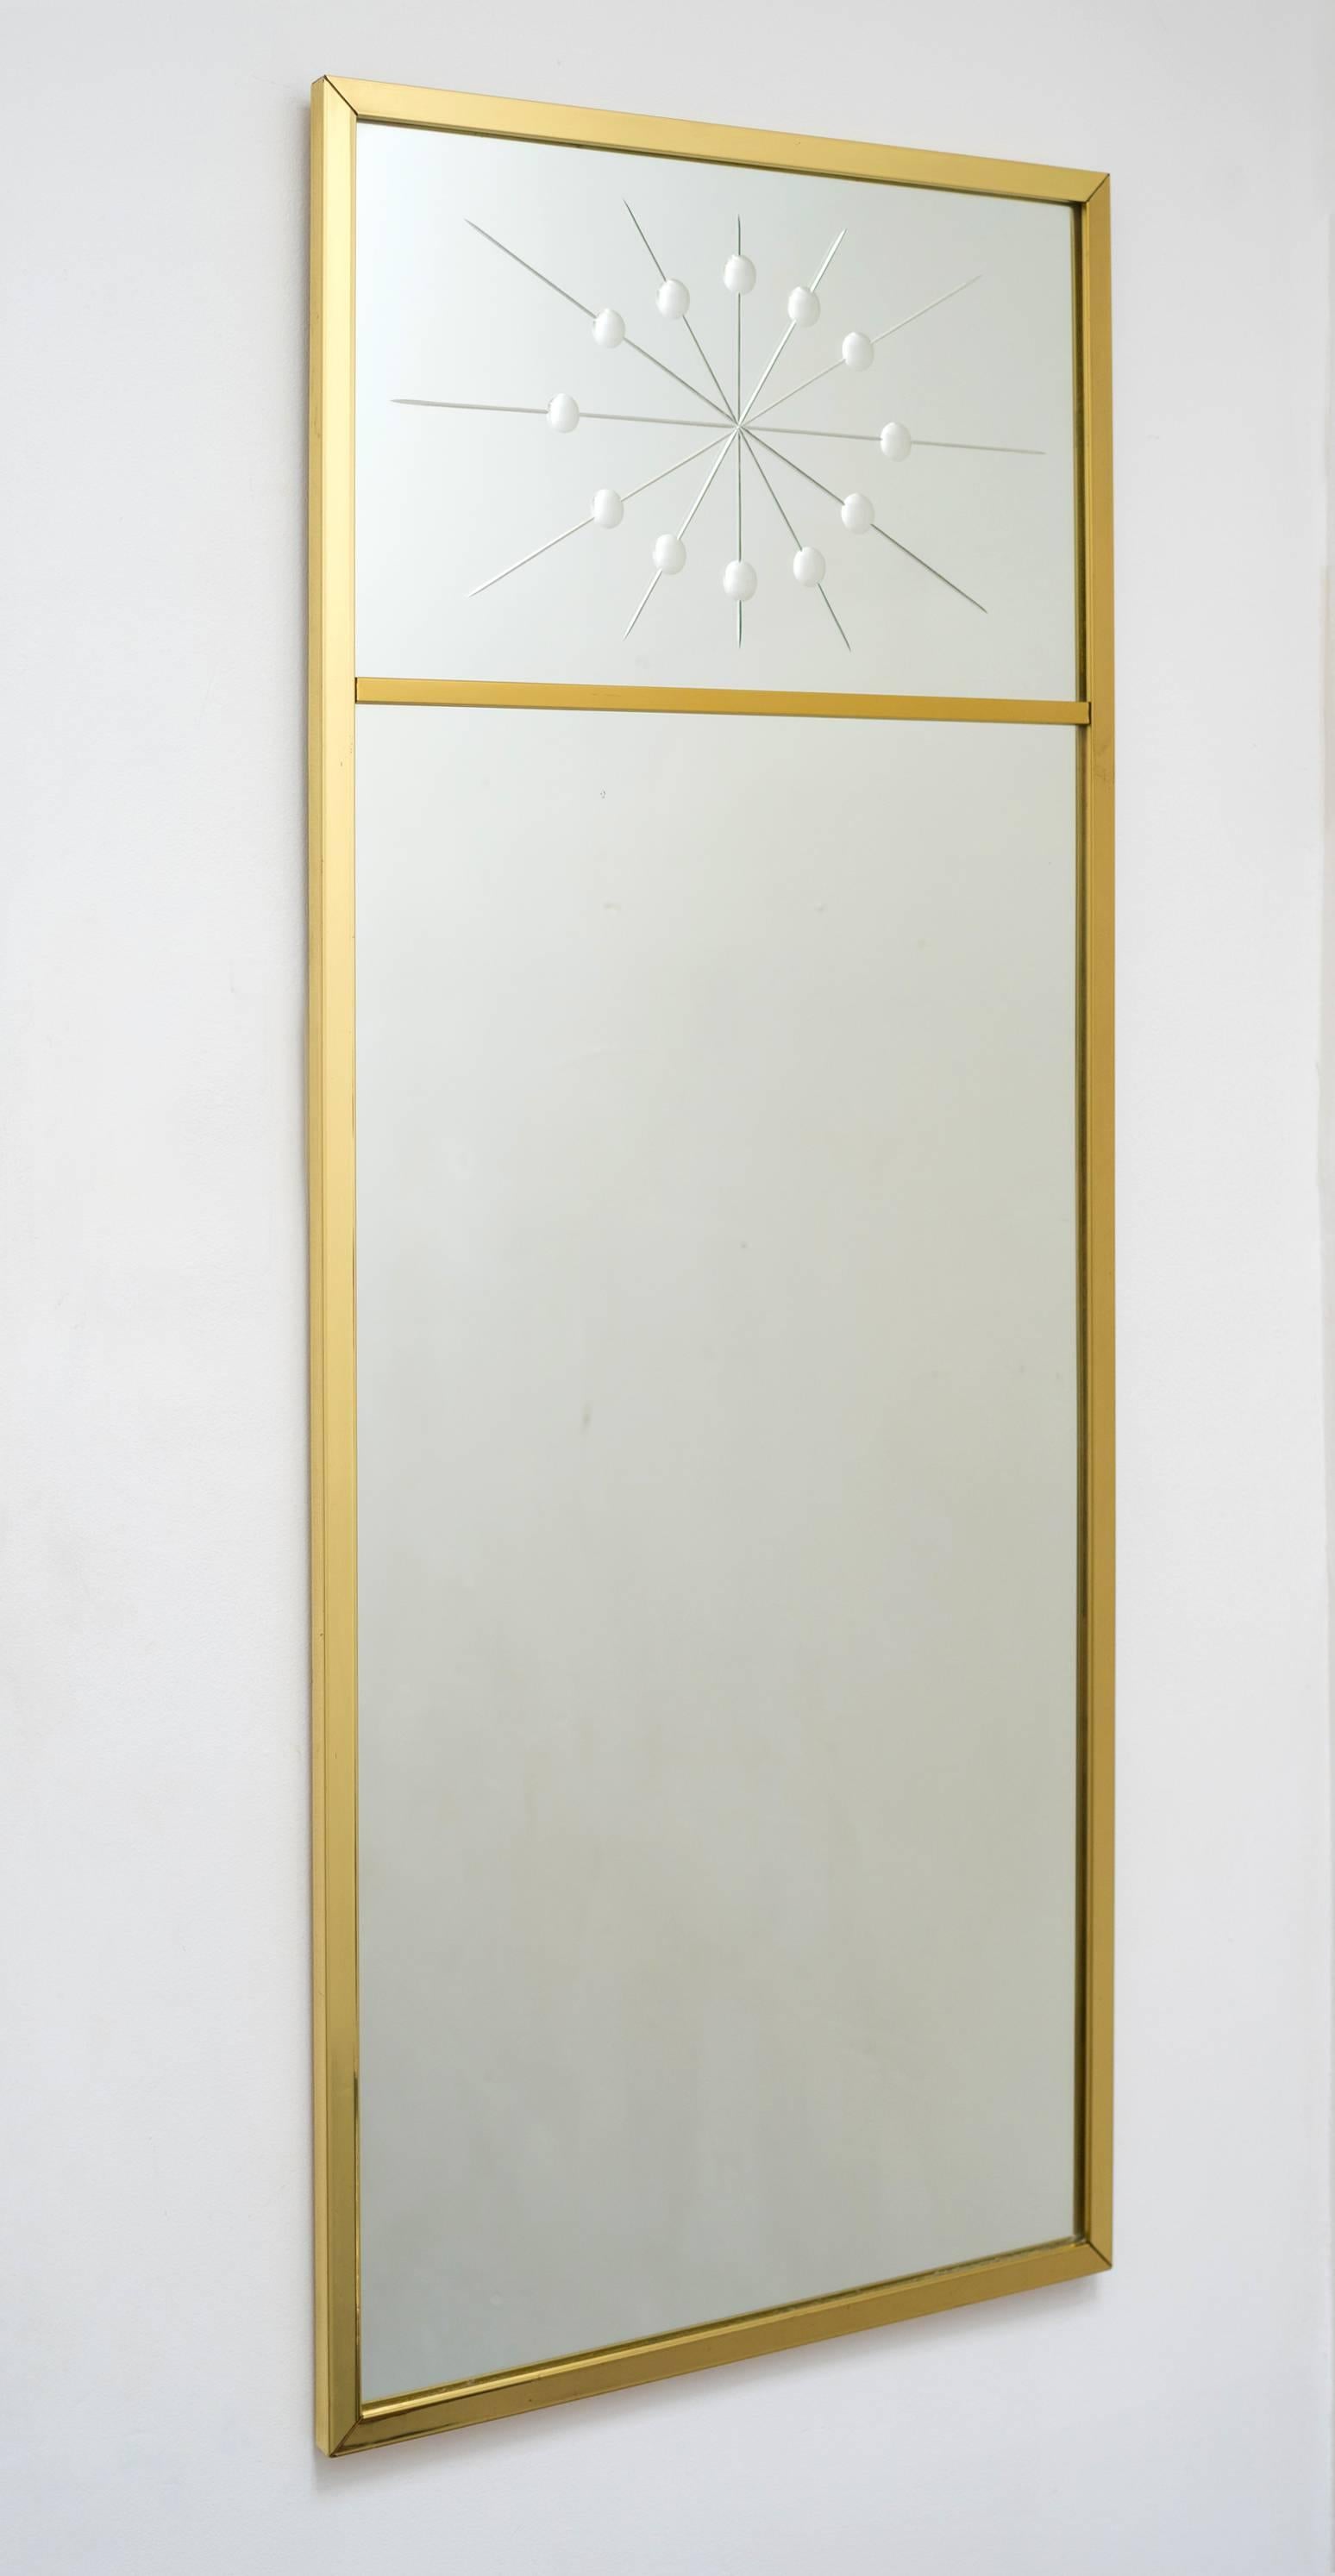 Ein moderner Wandspiegel in rechteckiger Form mit einem segmentierten Messingrahmen, dessen oberes Glas ein atomares Starburst-Motiv ganz im Stil von Tommi Parzinger trägt. Perfekt als Flur-/Eingangs-/Konsolenspiegel. 